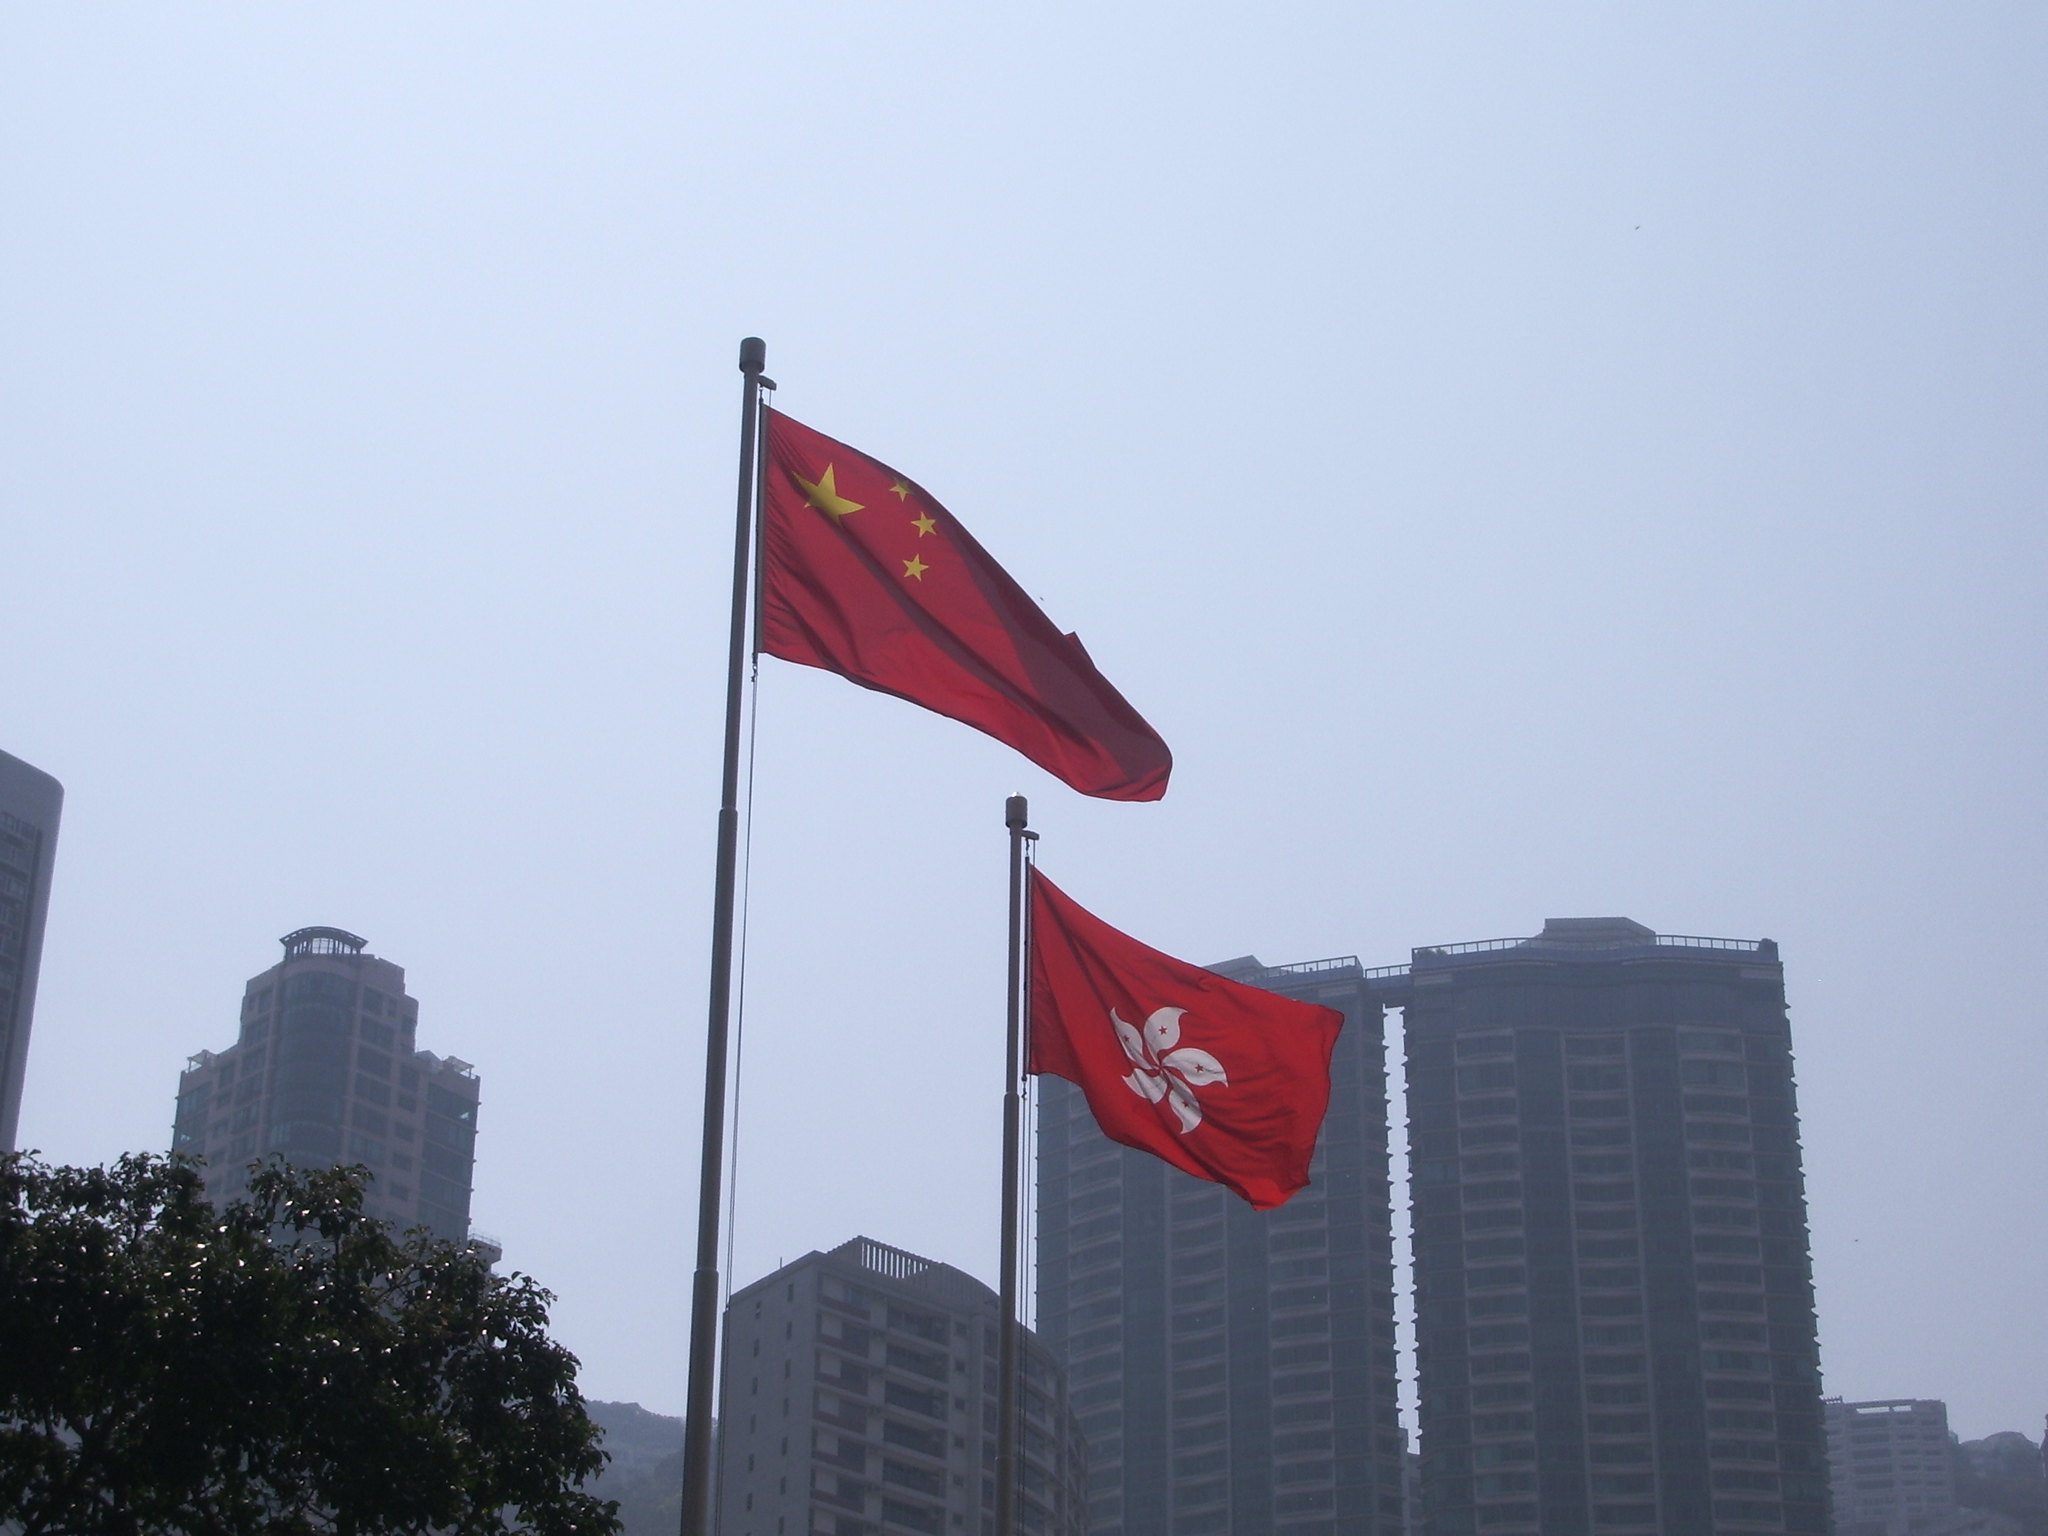 Na zdjęciu widać flagę Chińskiej Republiki Ludowej i flagę Hongkongu, w tle są budynki